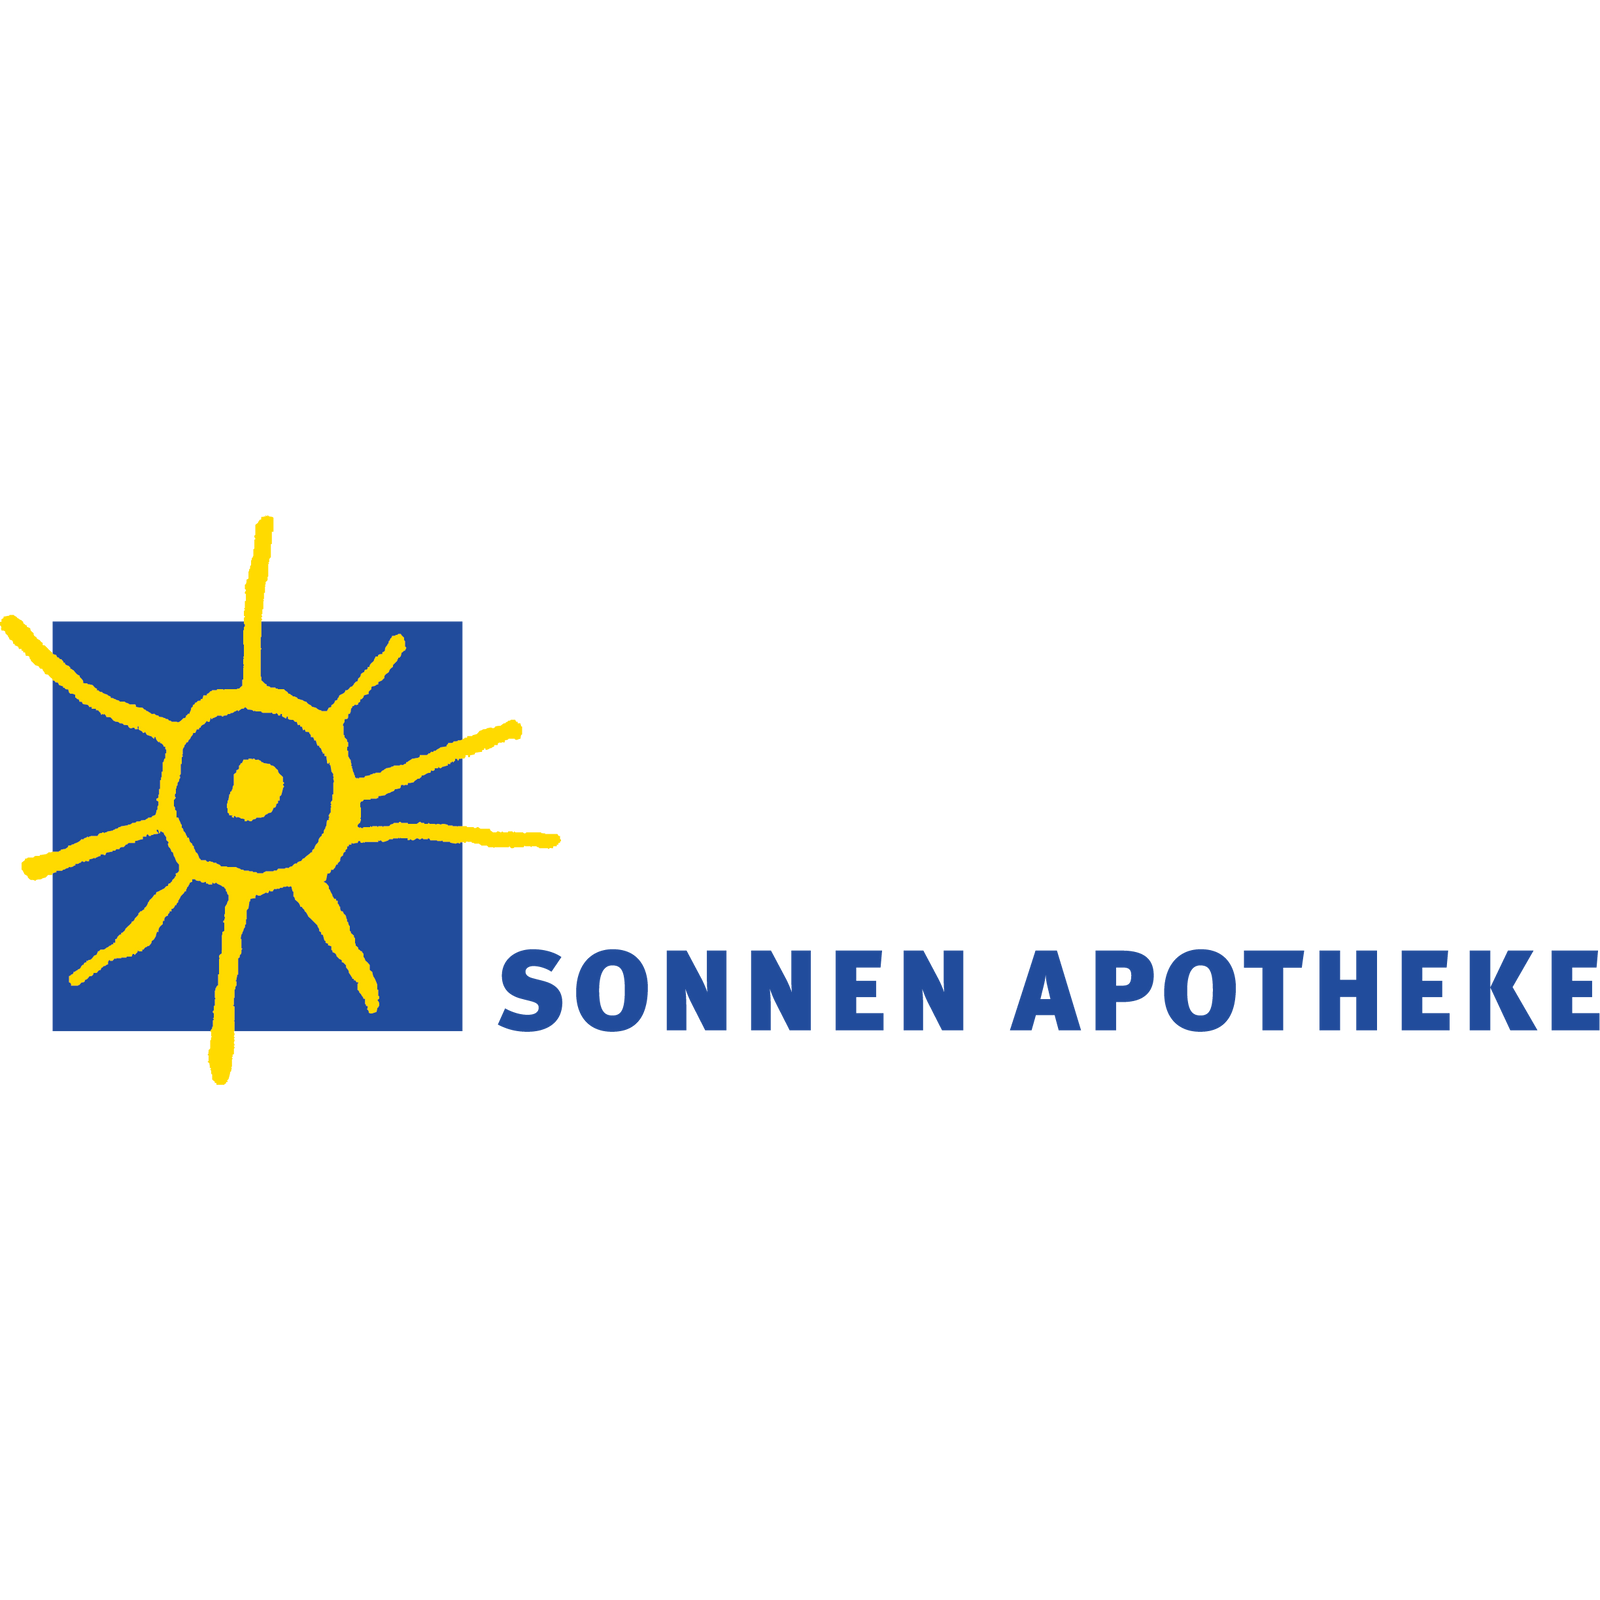 Sonnen-Apotheke in Wunstorf - Logo